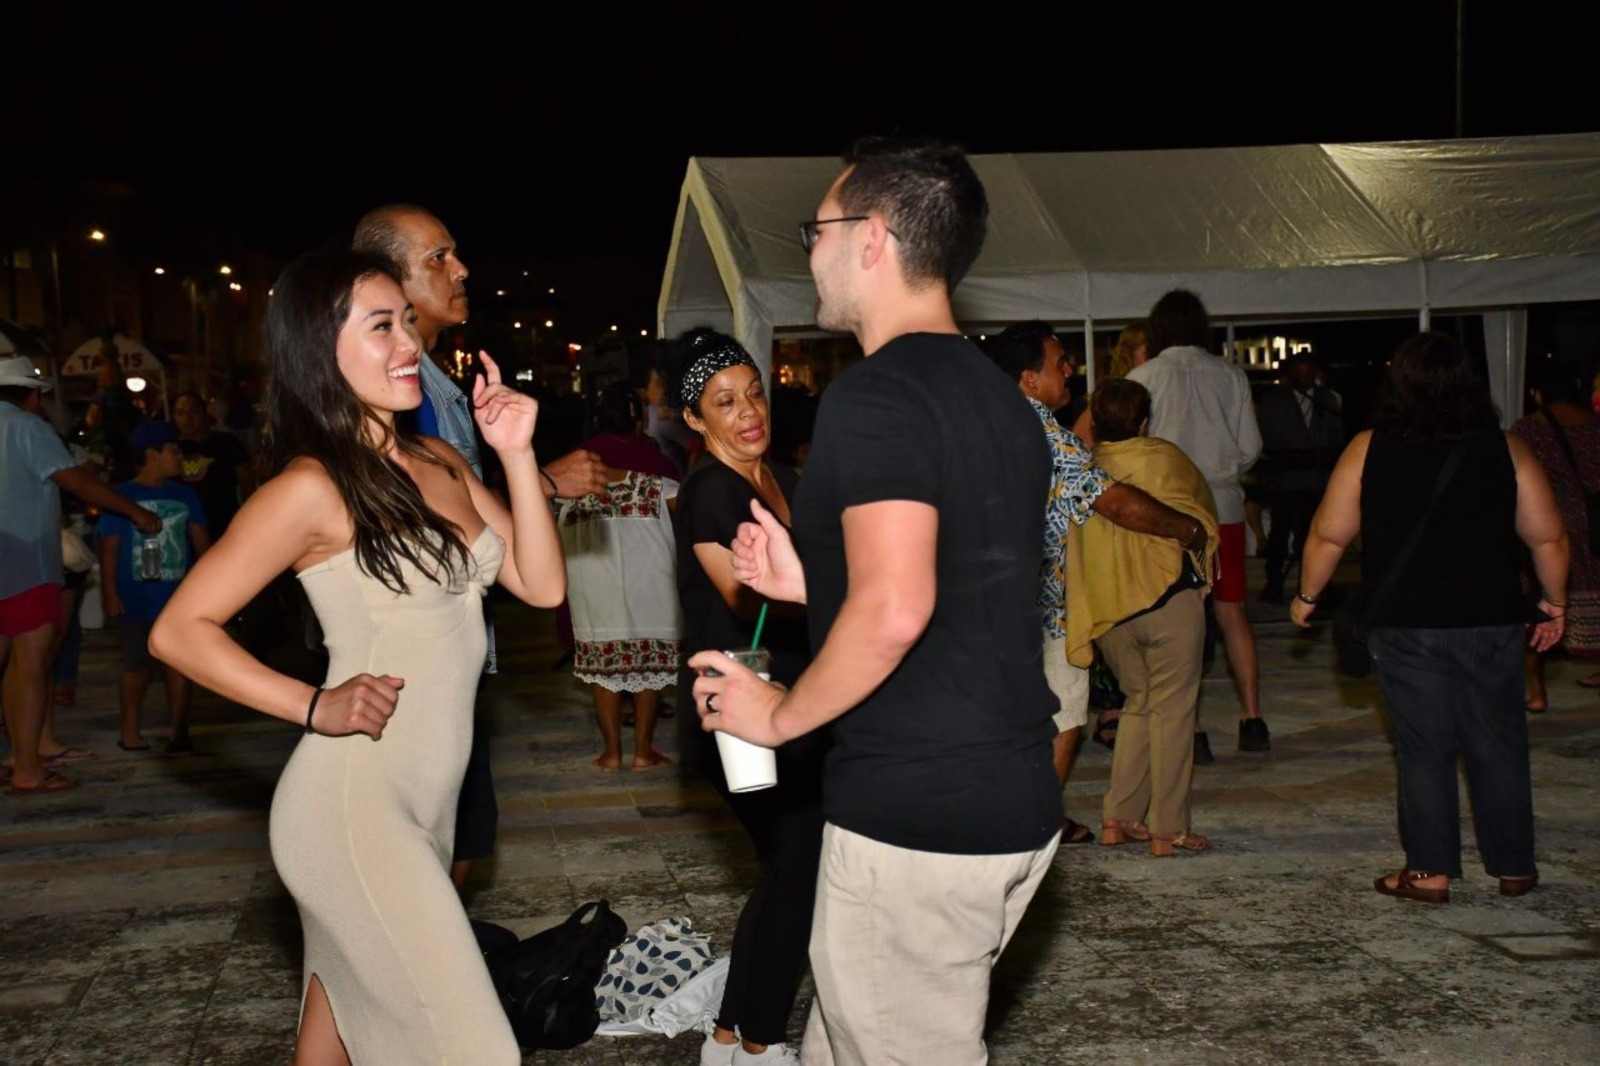 Fundación de Parques y Museos de Cozumel invita a una noche de baile en honor a los papás